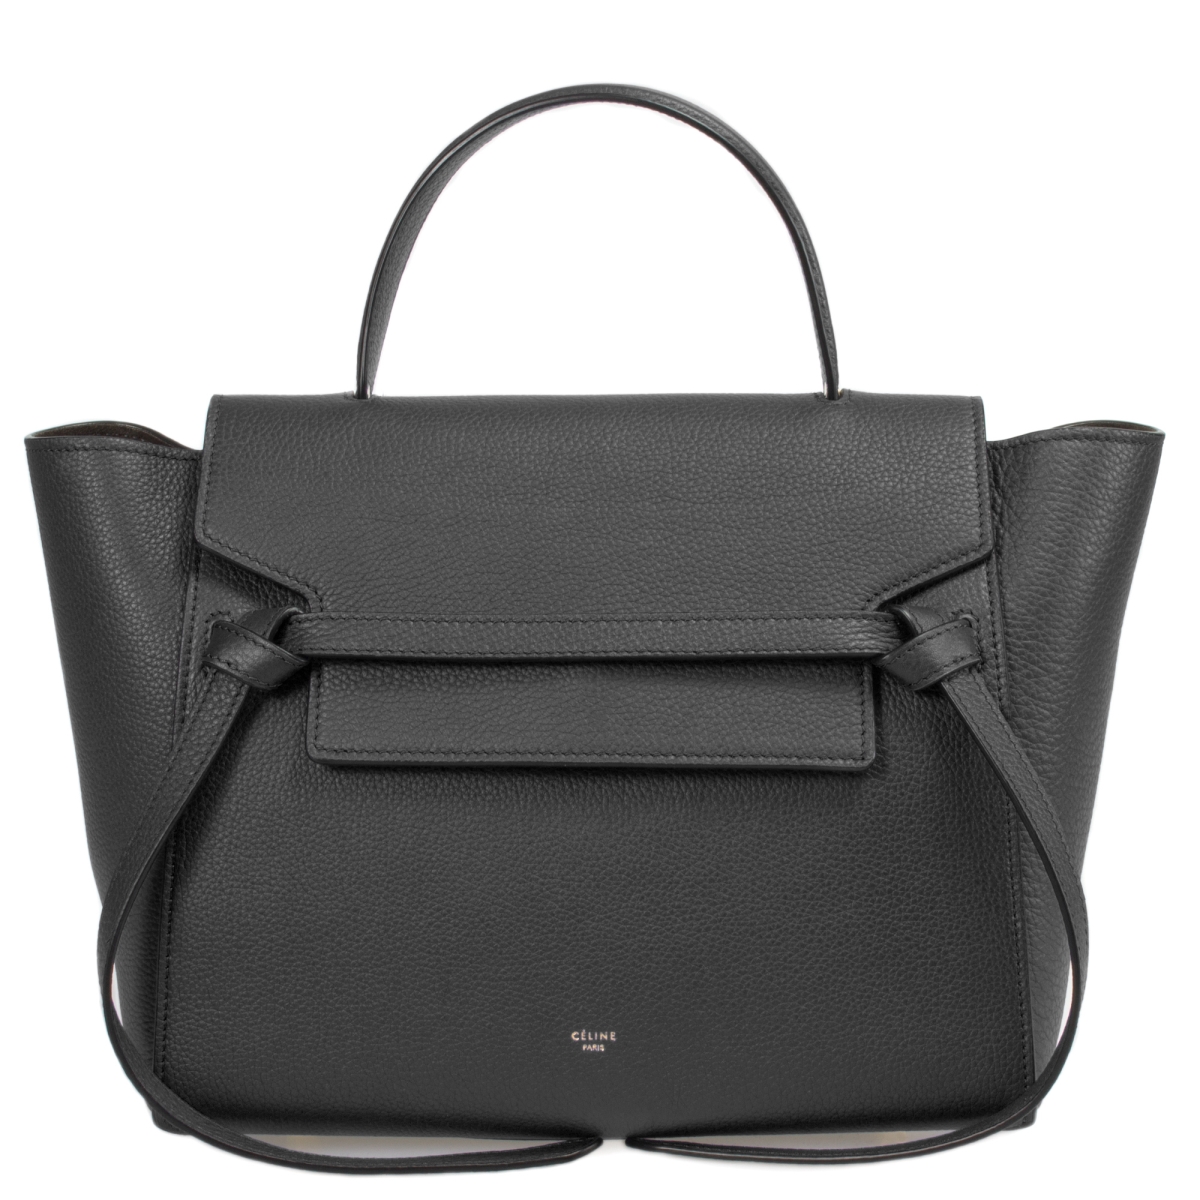 Cel-hbag-blt-blk-gld-m Medium Belt Bag, Black Grained Leather & Gold Hardware